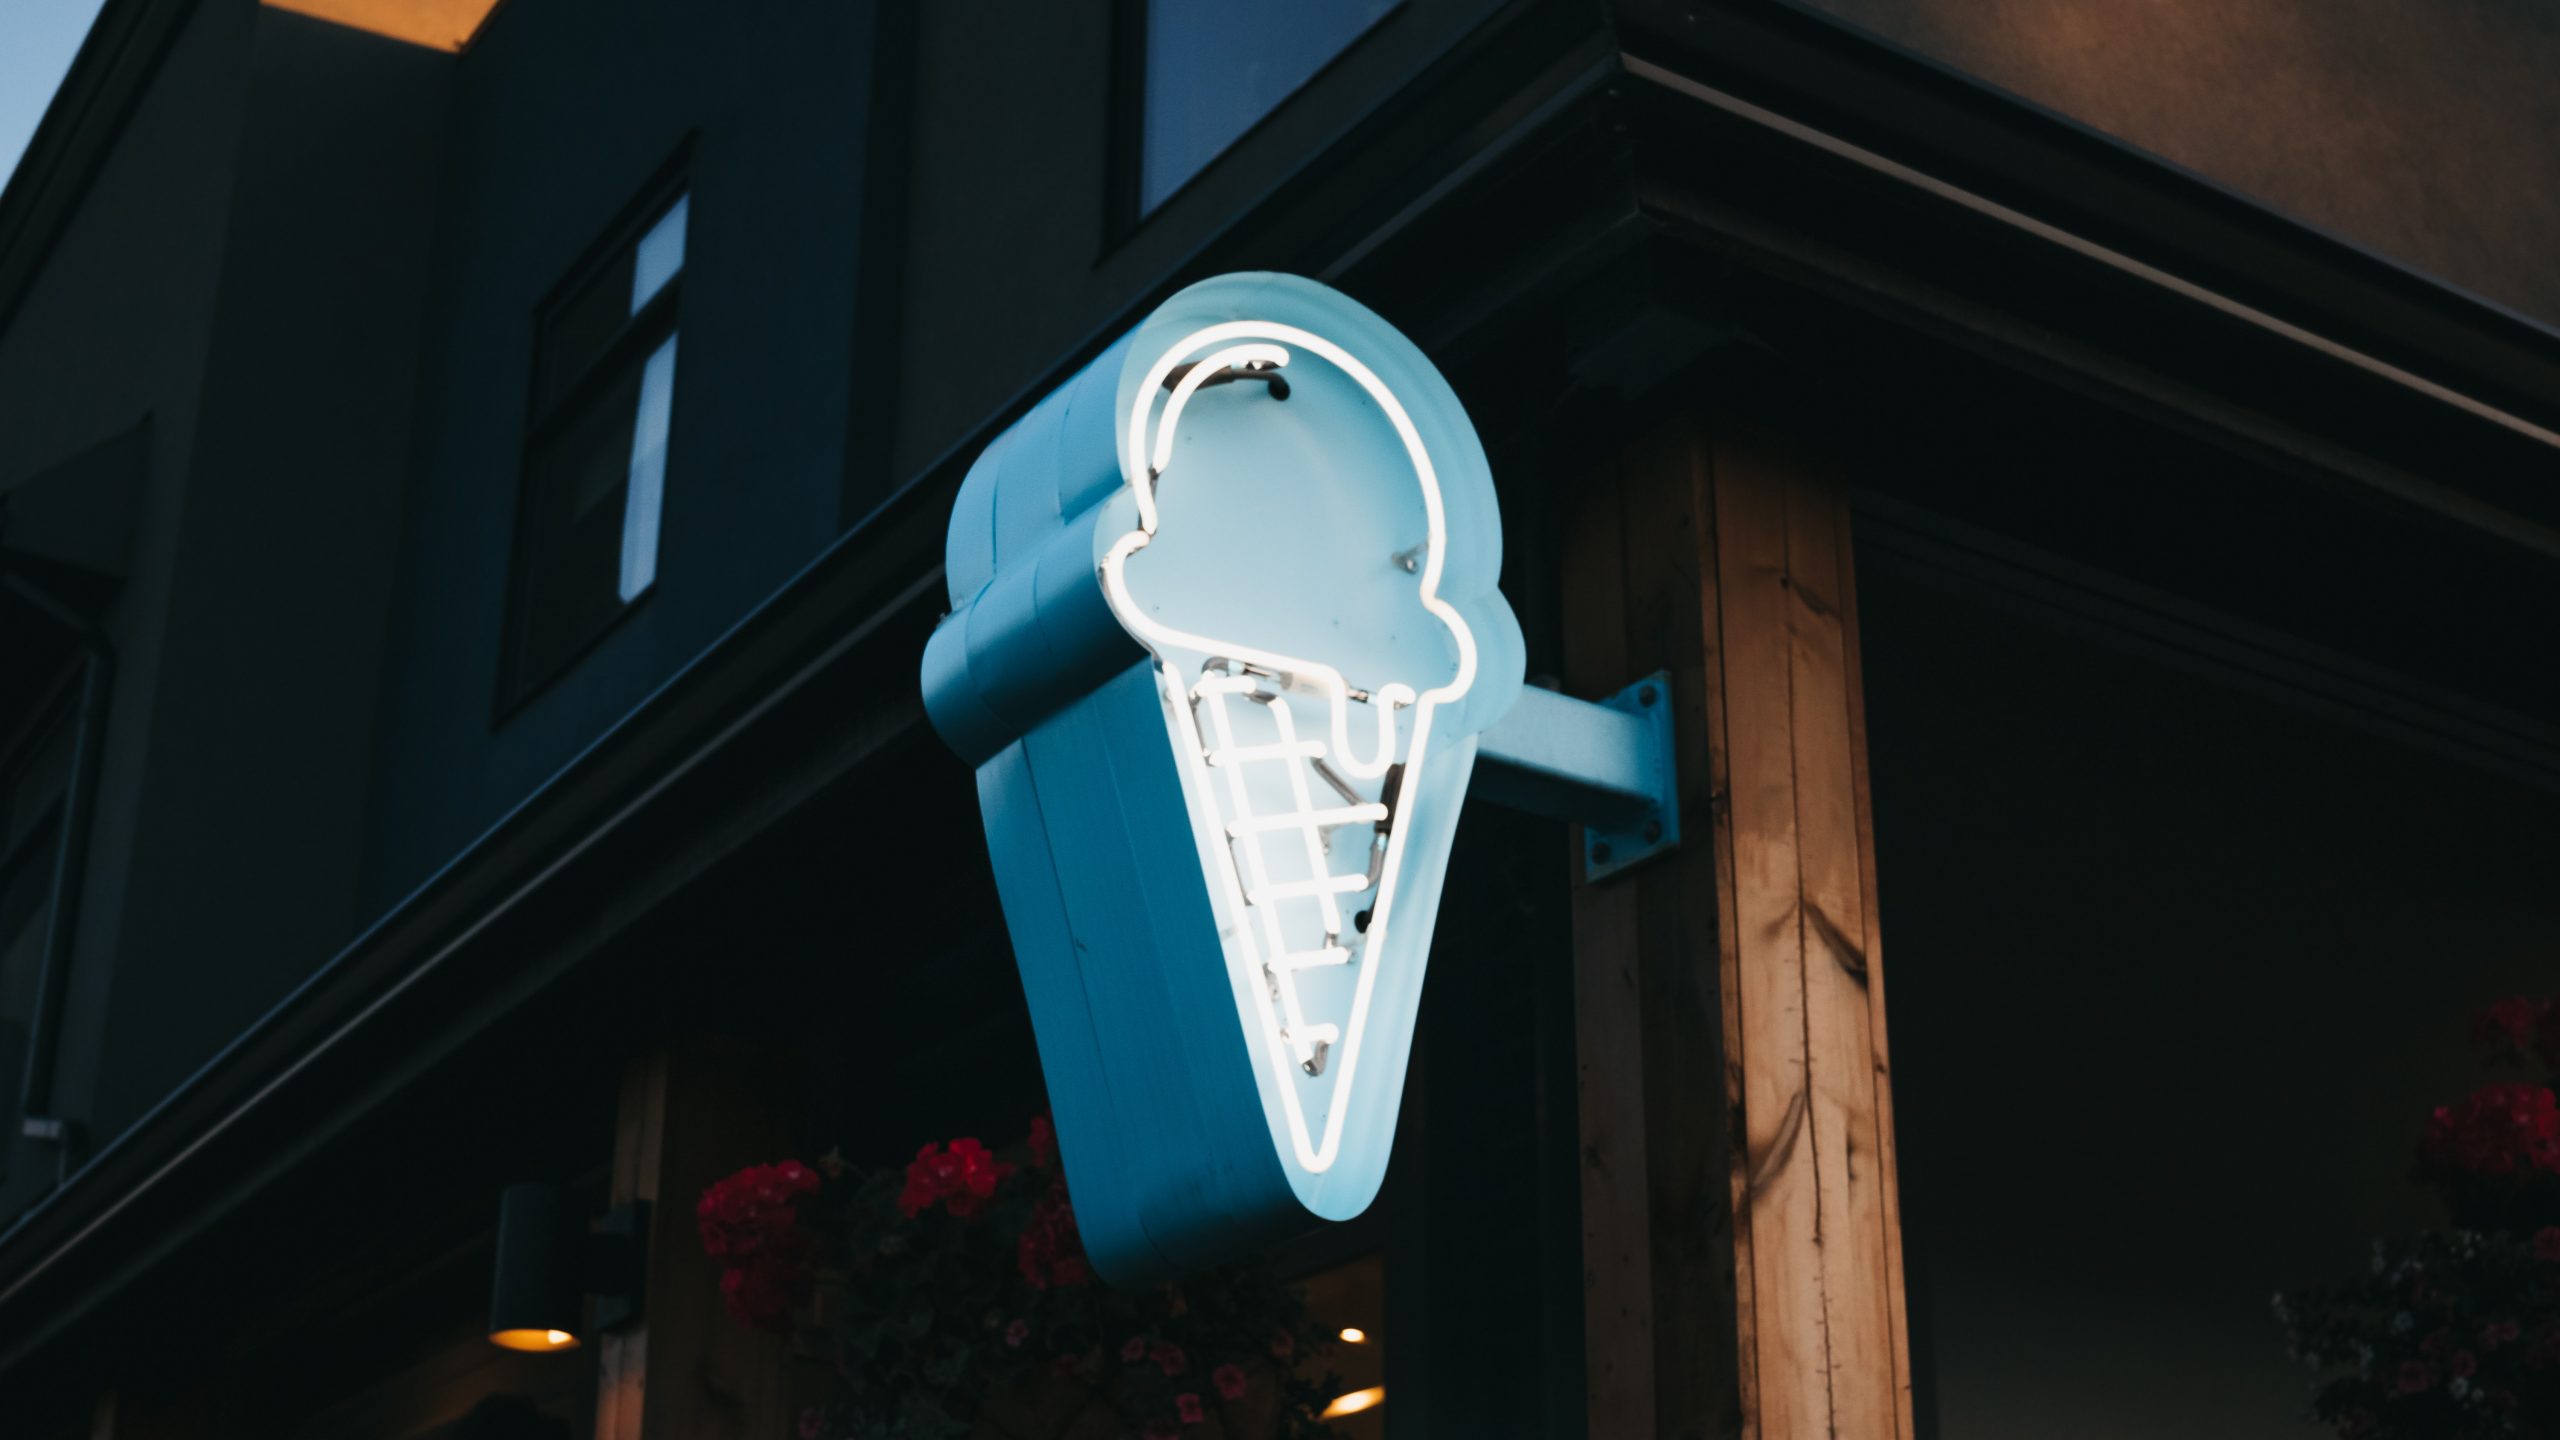 unique ice cream shop builds